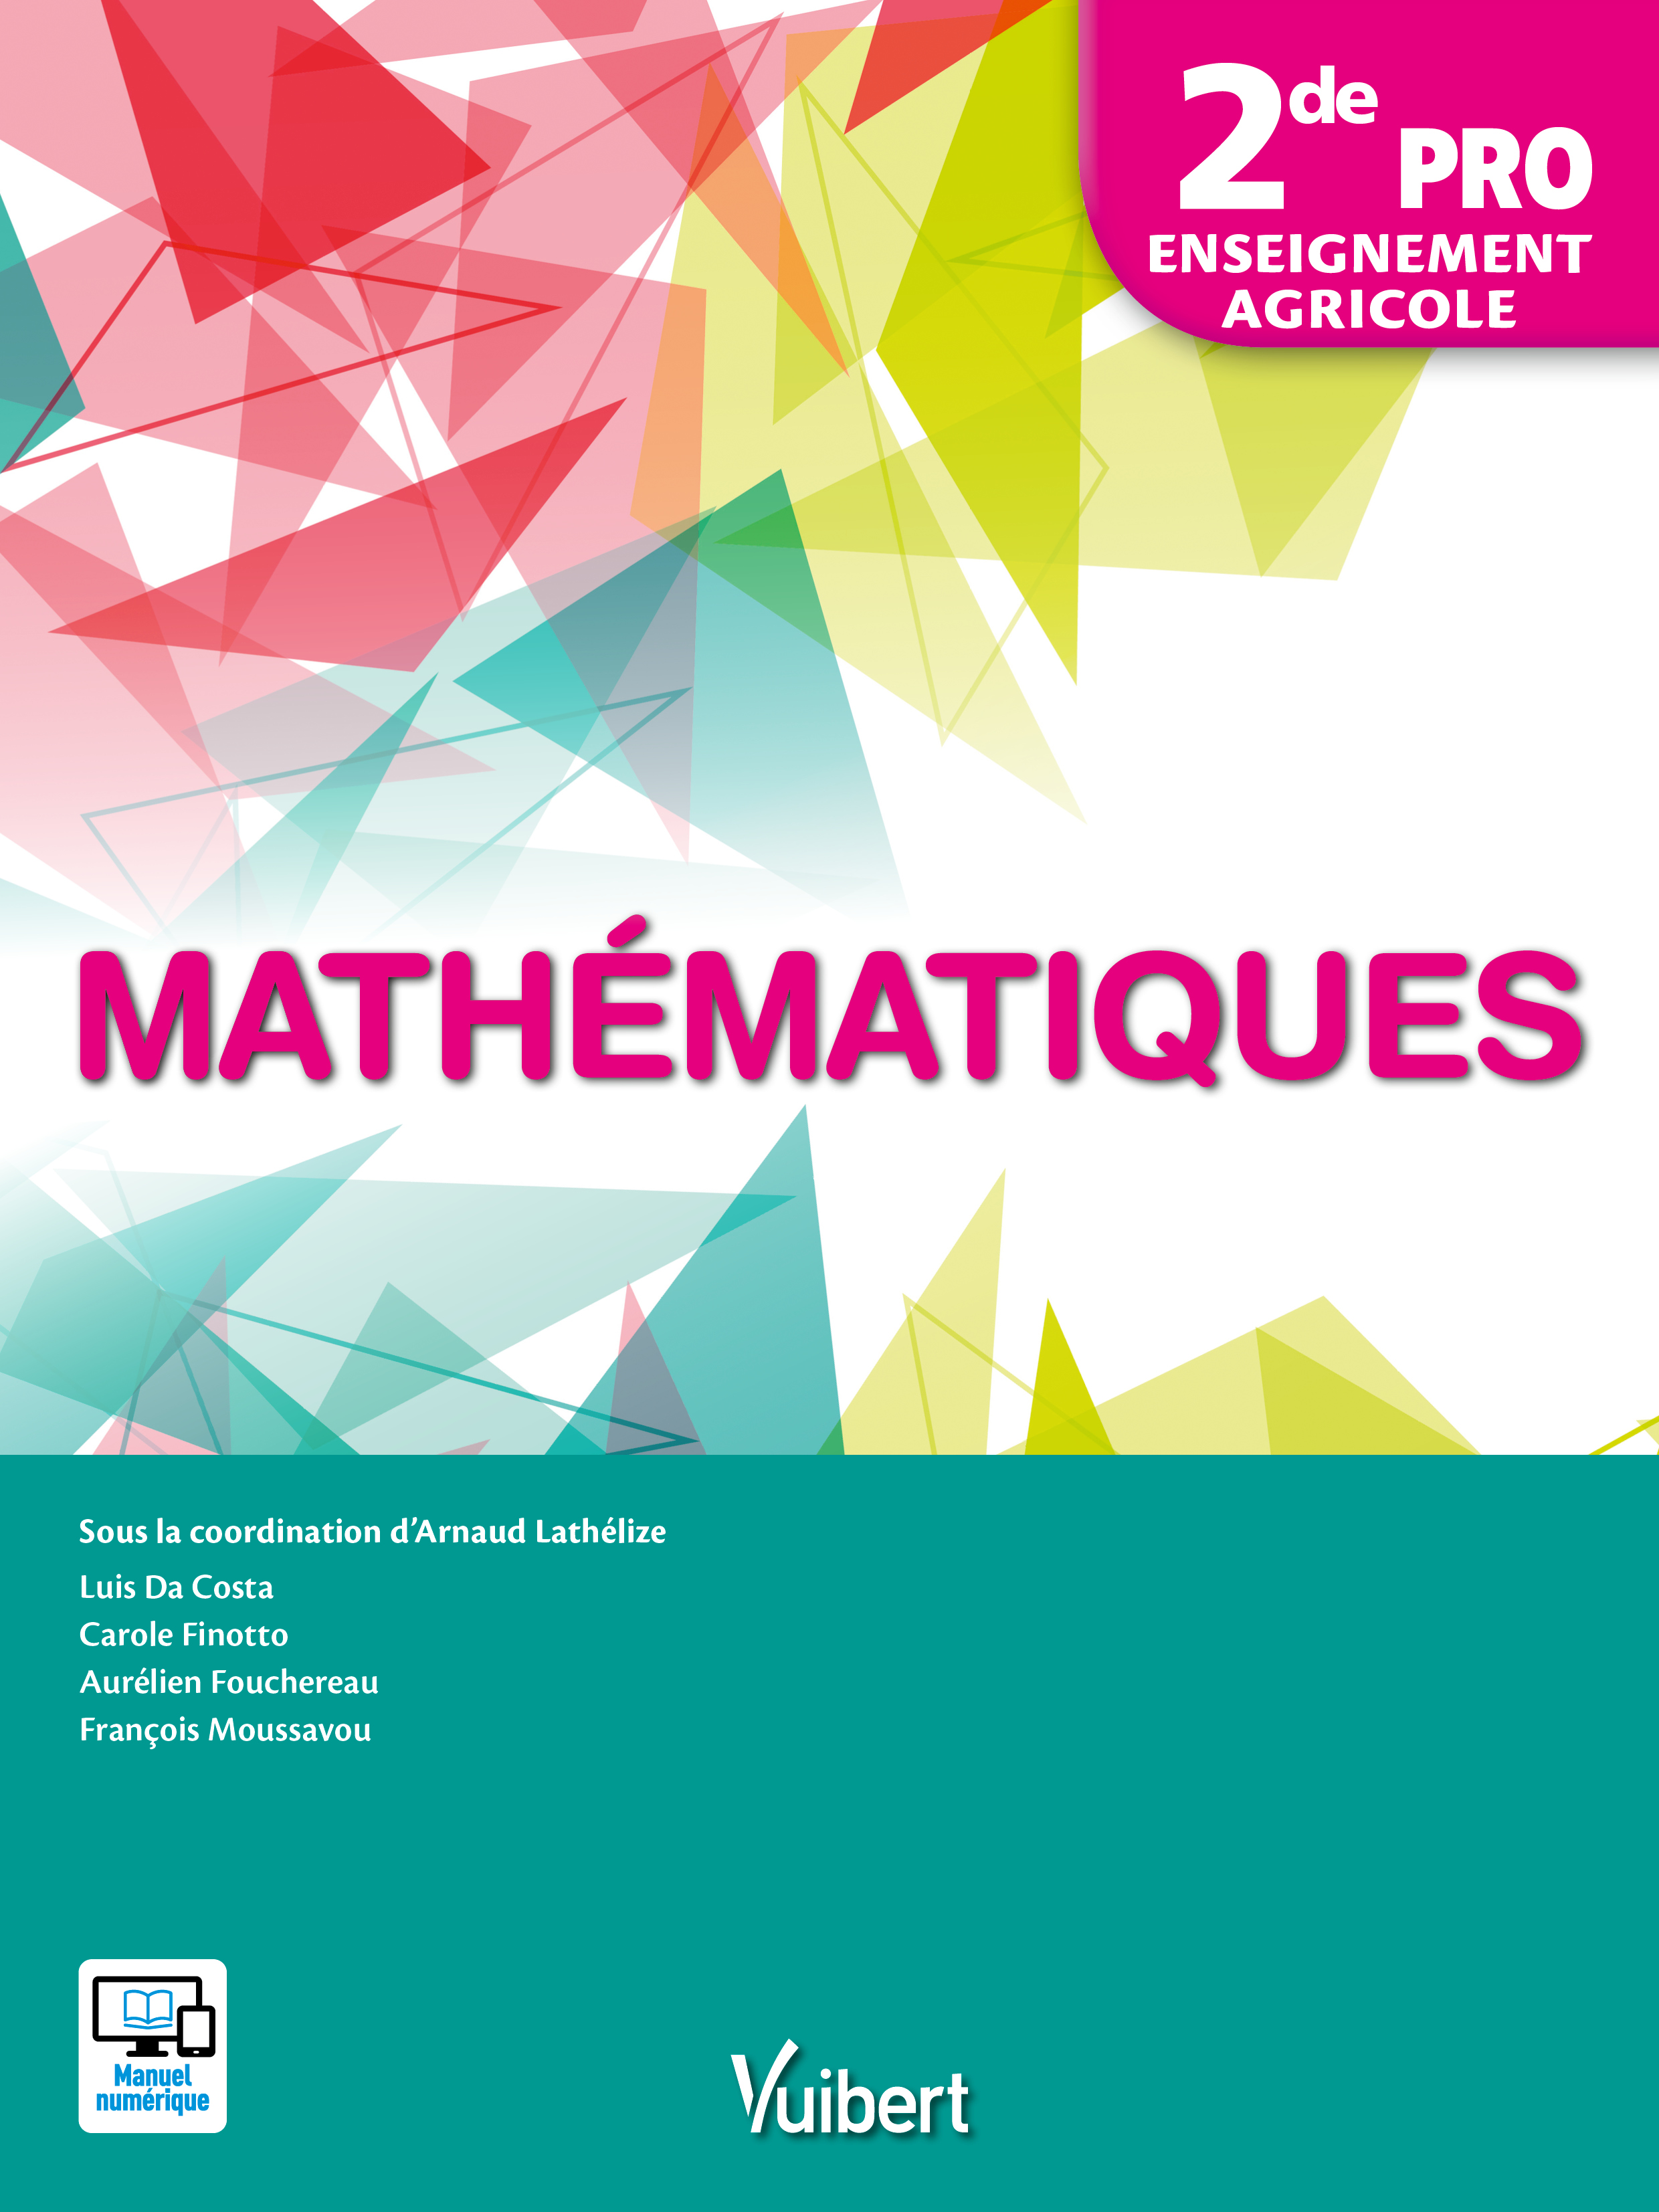 Mathématiques 2de Bac professionnel agricole (2017) | Vuibert